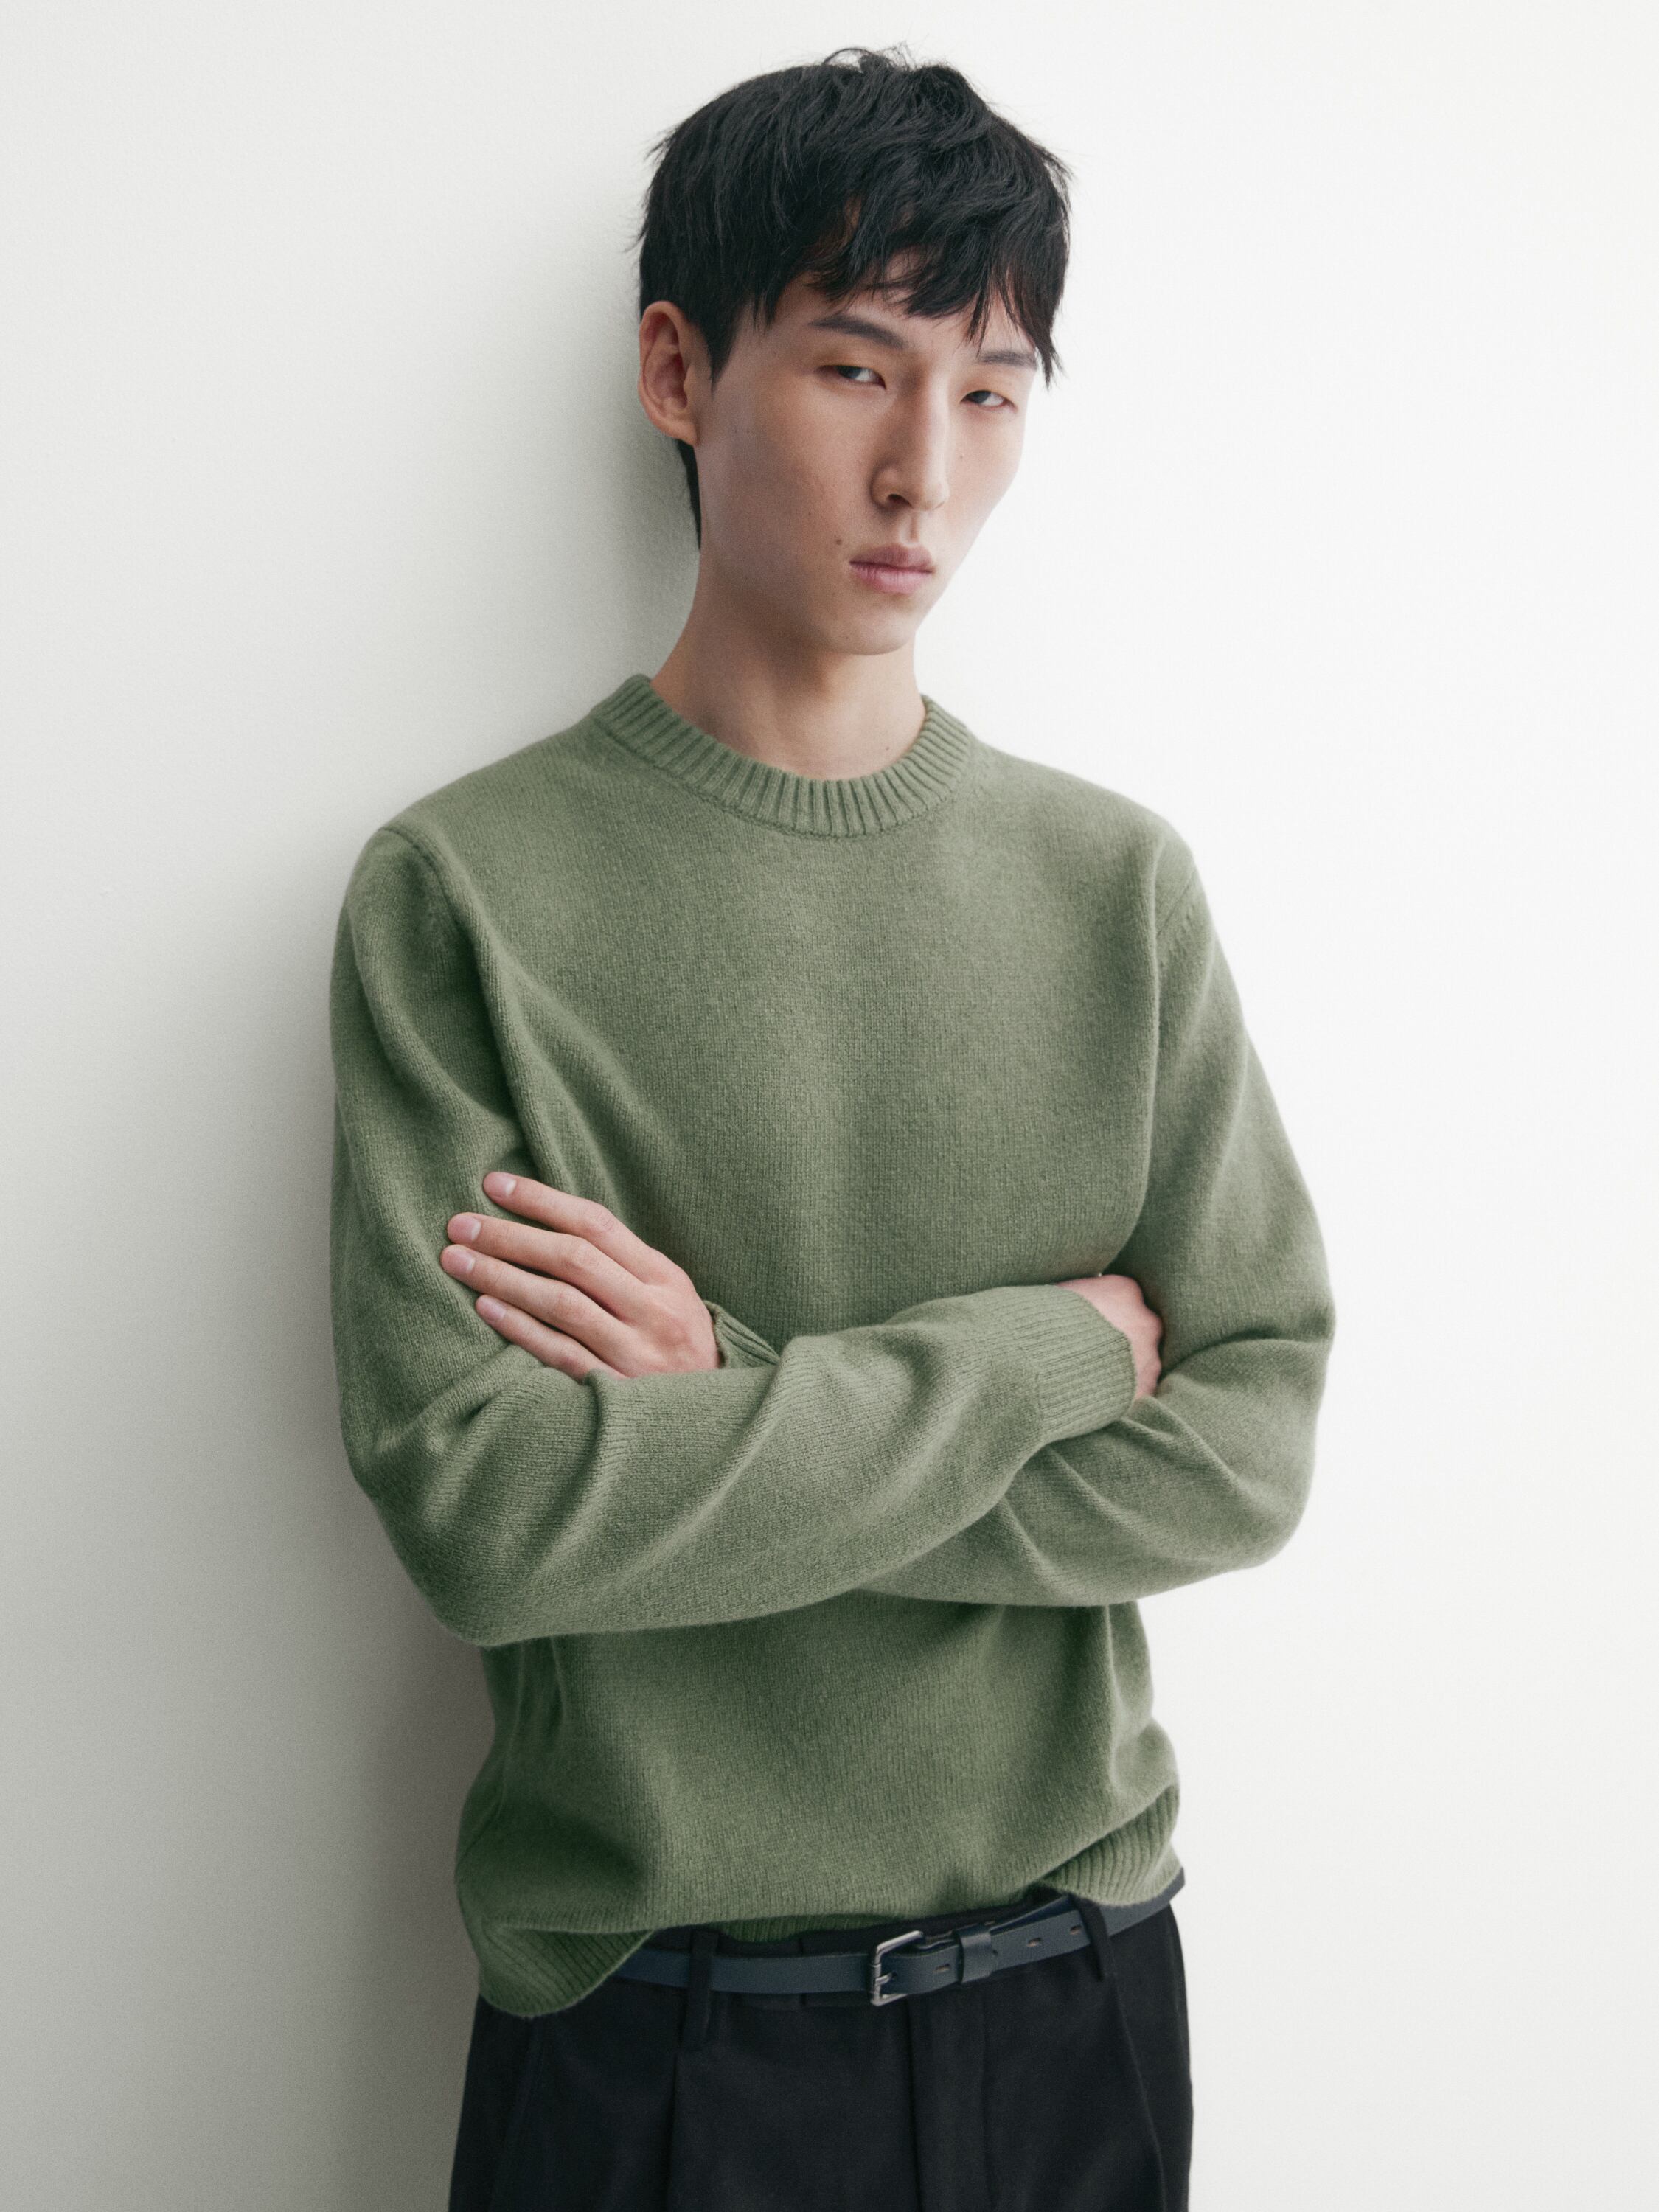 Wool blend knit sweater